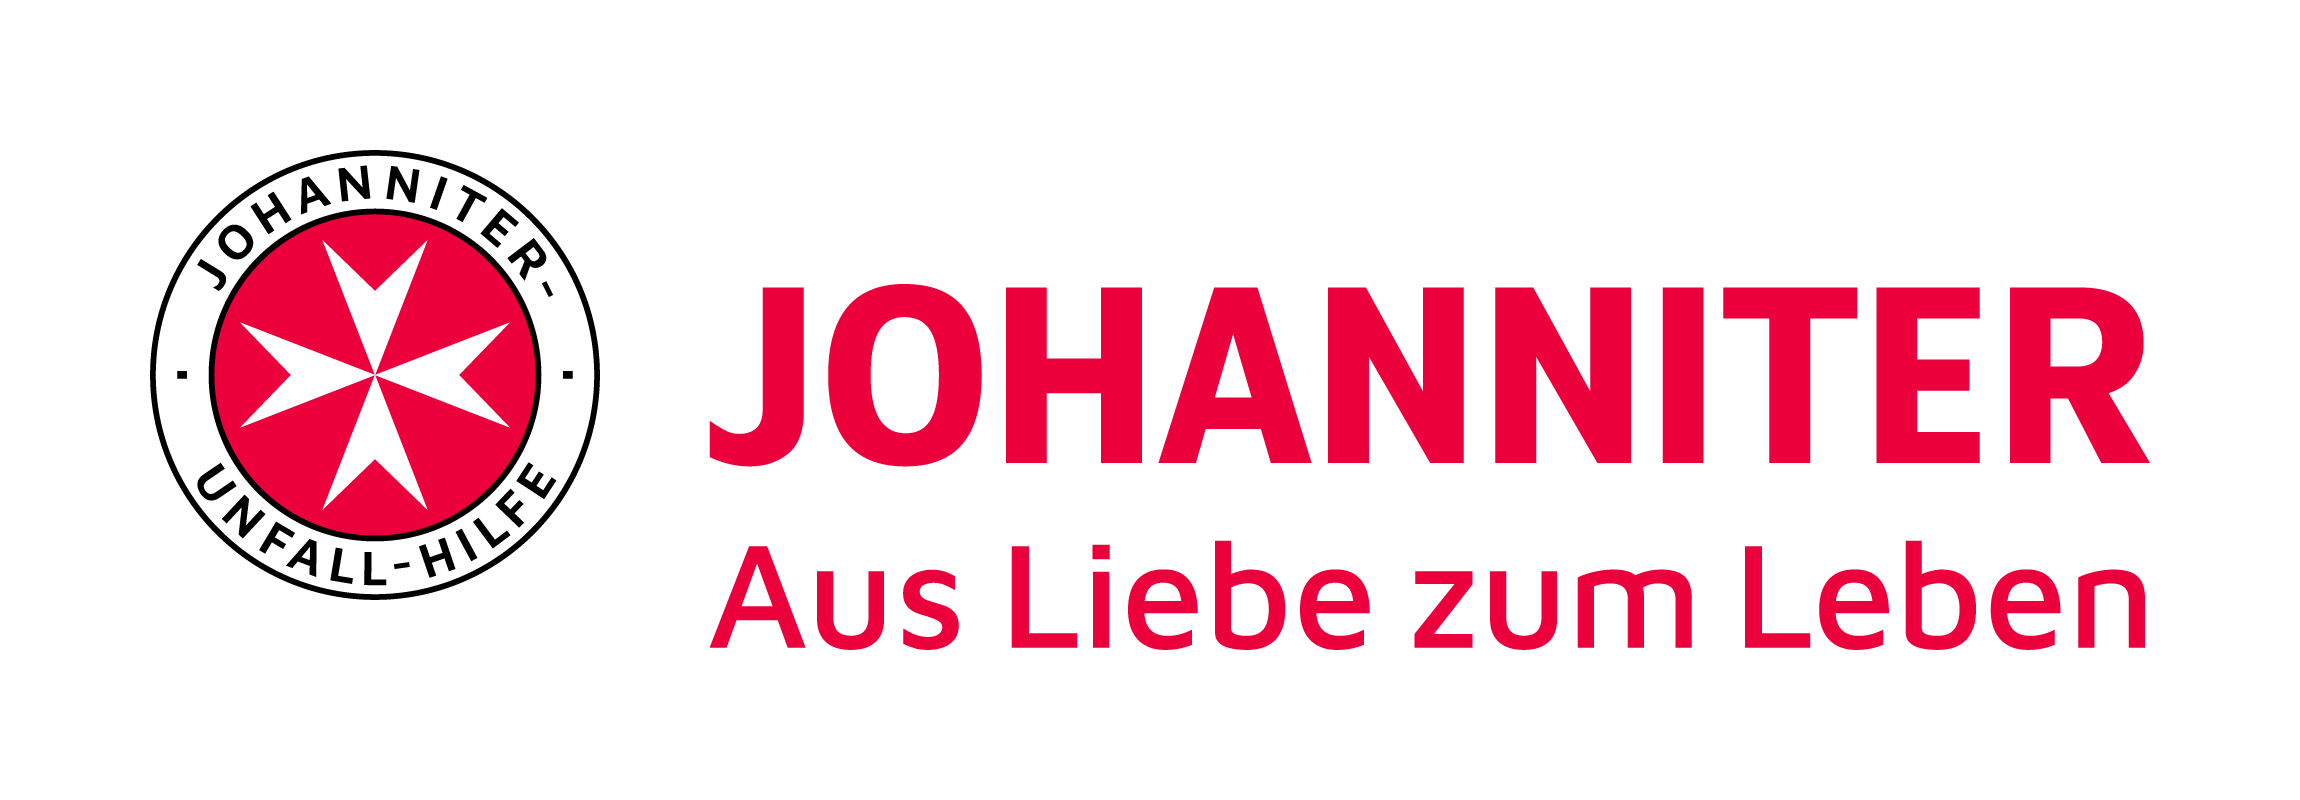 Zur Homepage von Johanniter-Unfall-Hilfe in Österreich